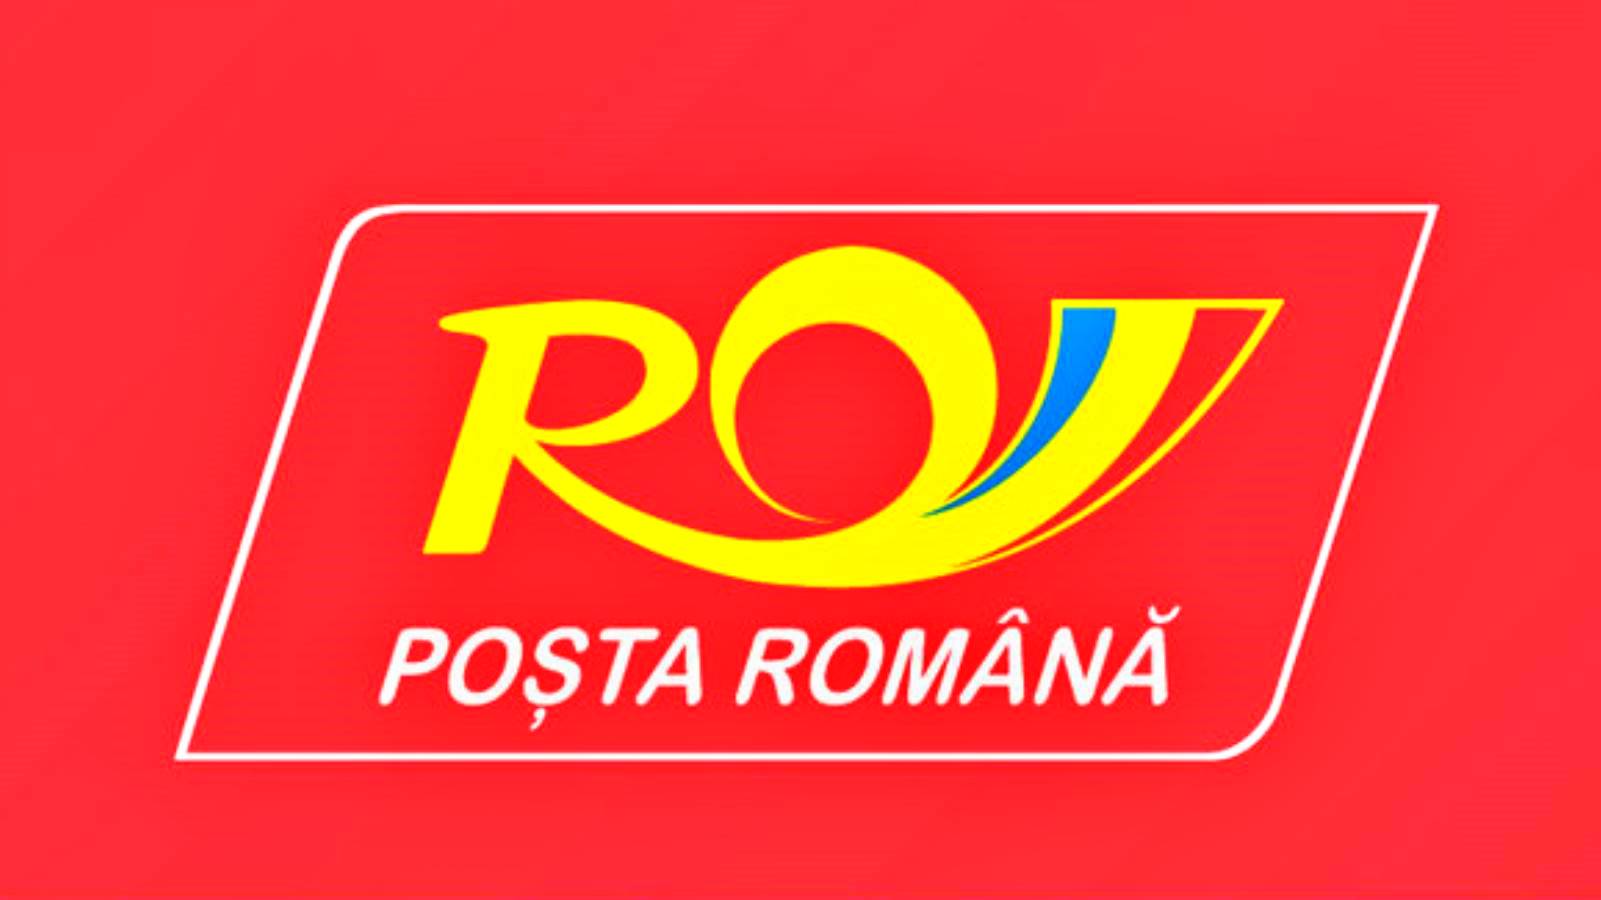 Romanian Post Message for Romanians Regarding Advantageous Prices for Shipments